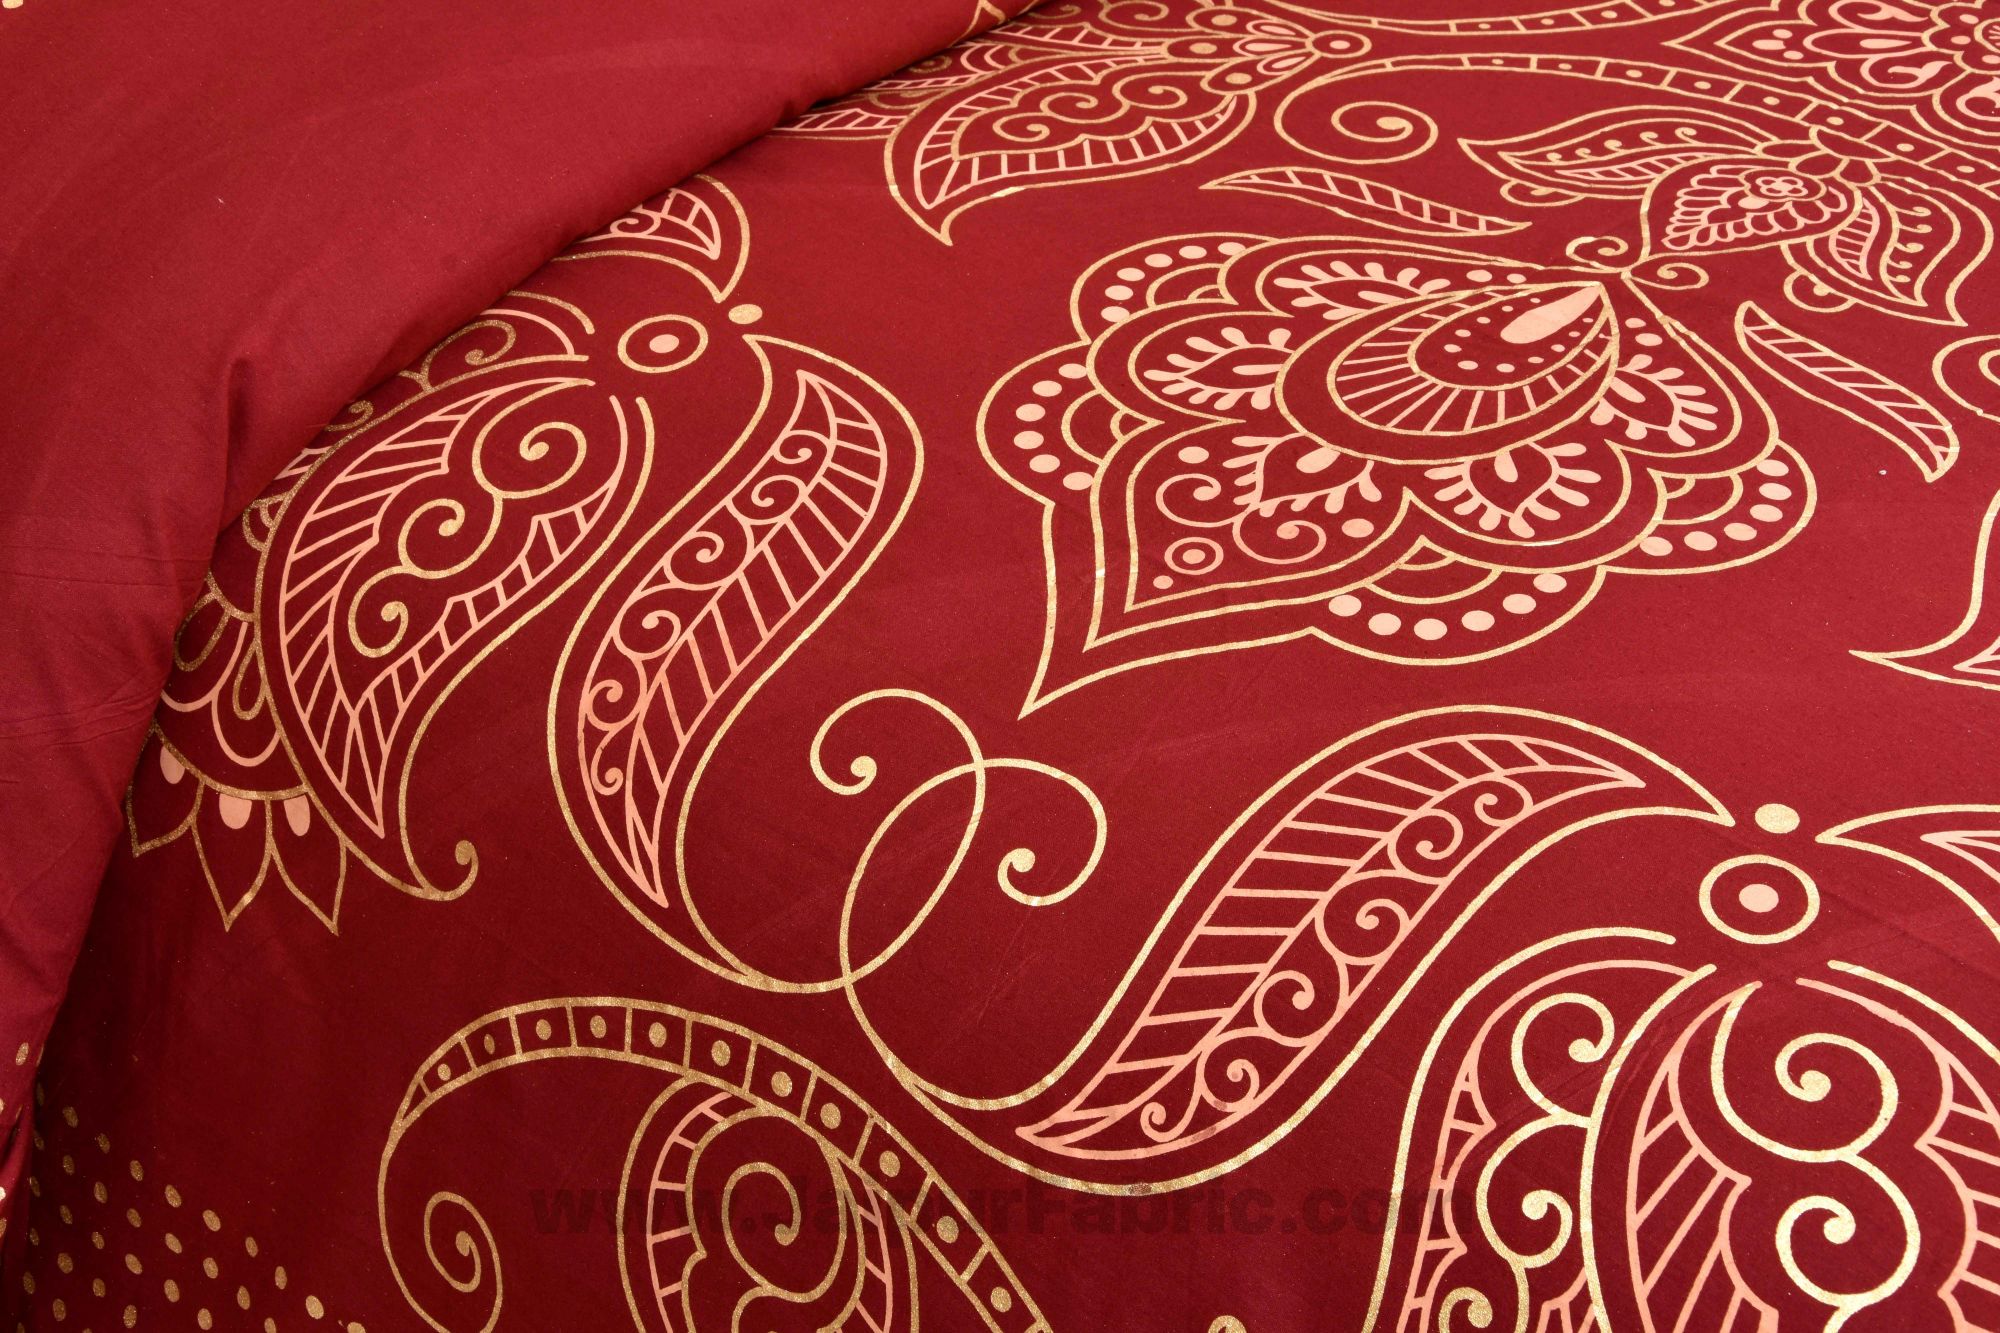 Royal Goldi Maroon King Size Bed Sheet